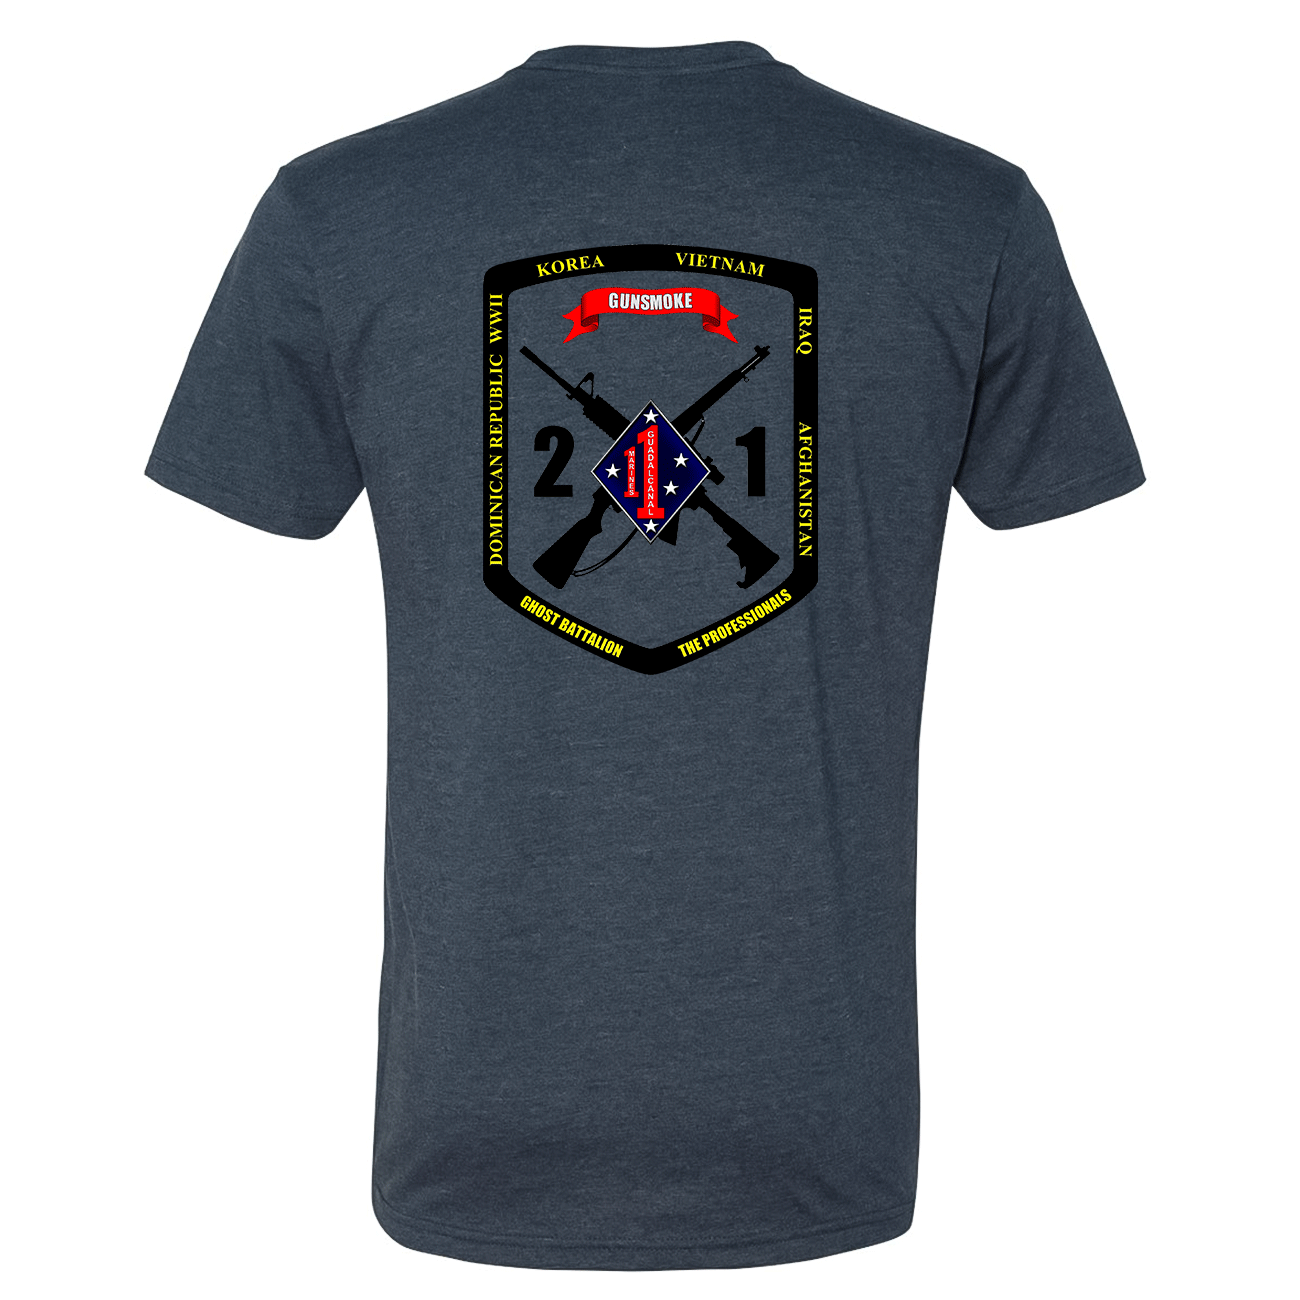 2nd Battalion 1st Marines Unit Shirt Gunsmoke